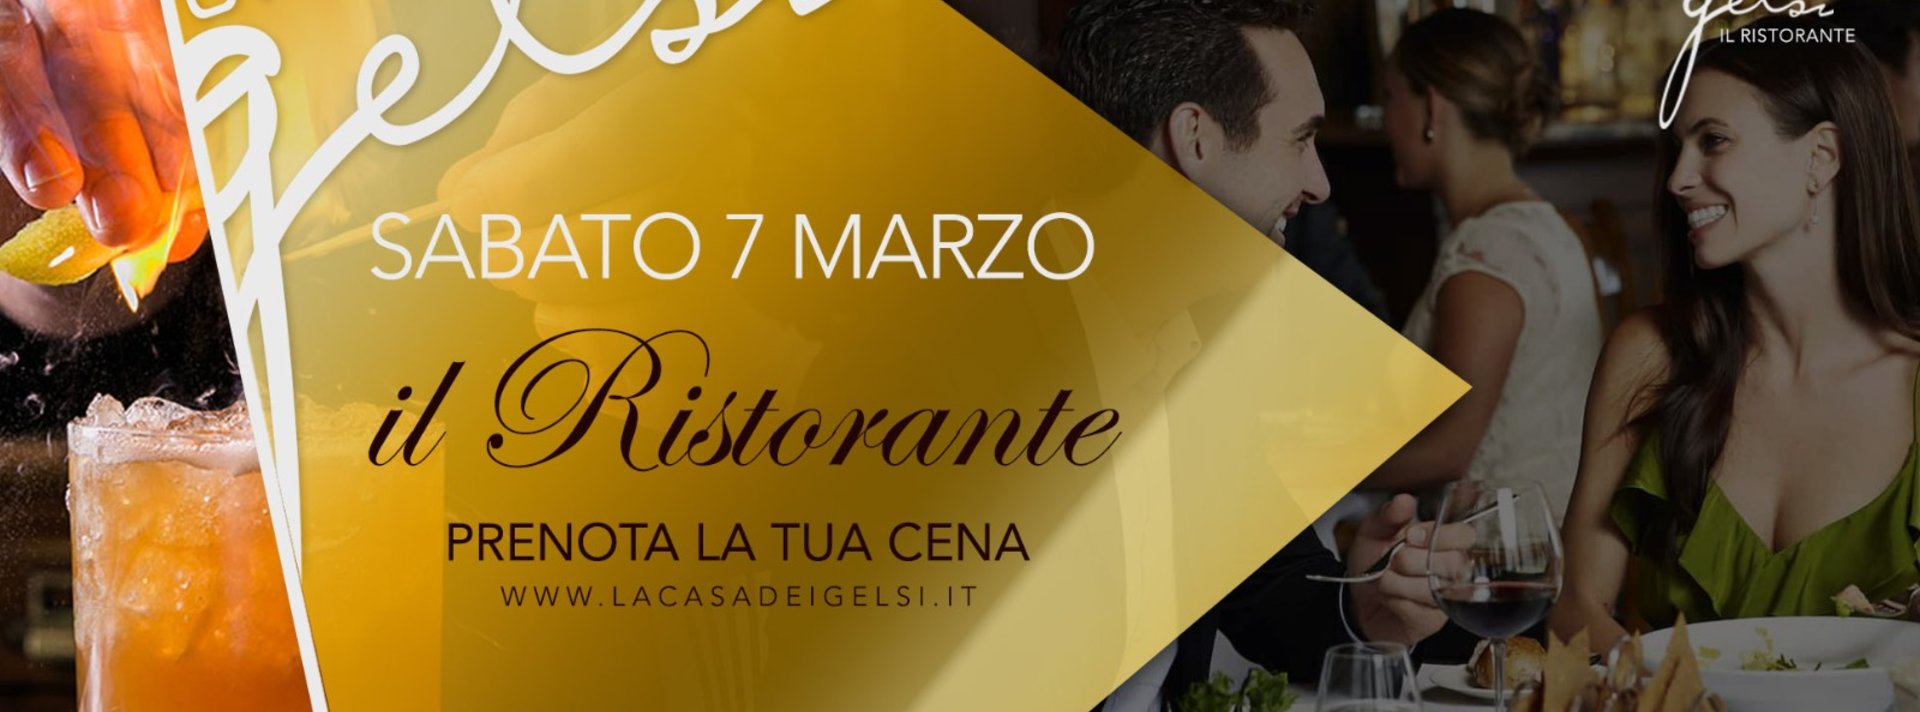 Cena ristorante Gelsi 7 marzo 2020